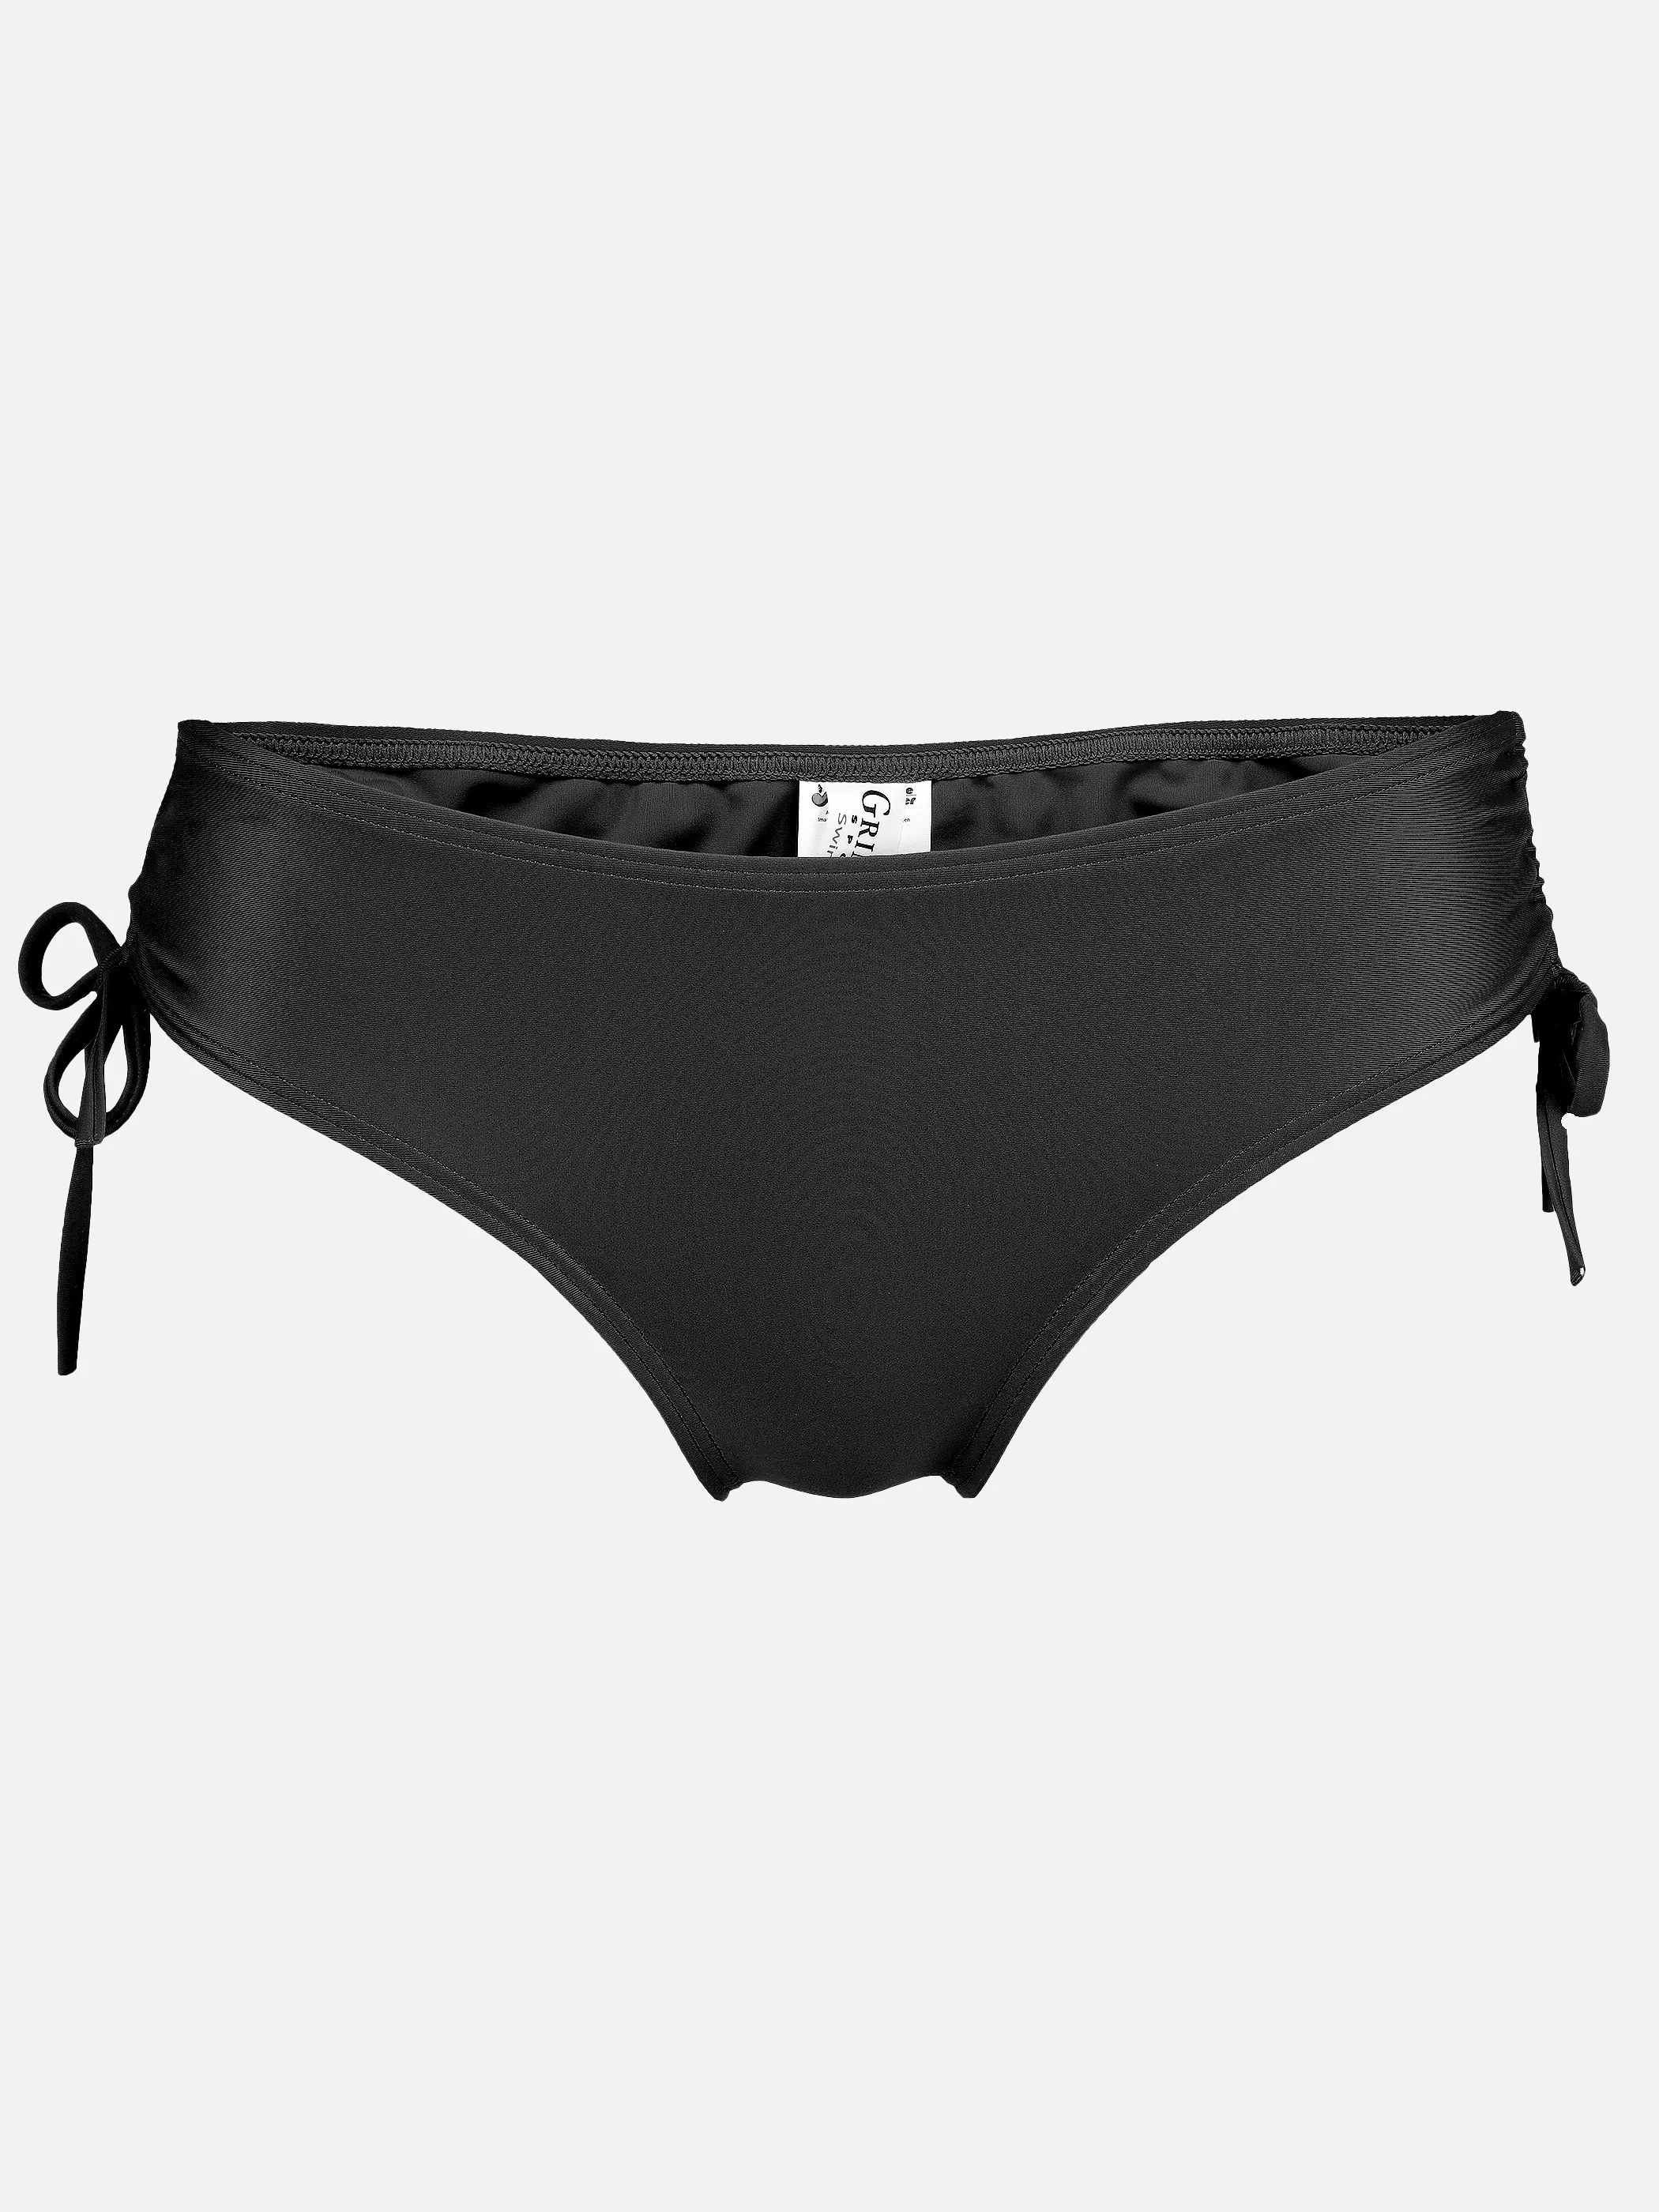 Grinario Sports Da-Bikini Hose uni Schwarz 890130 BLACK 1